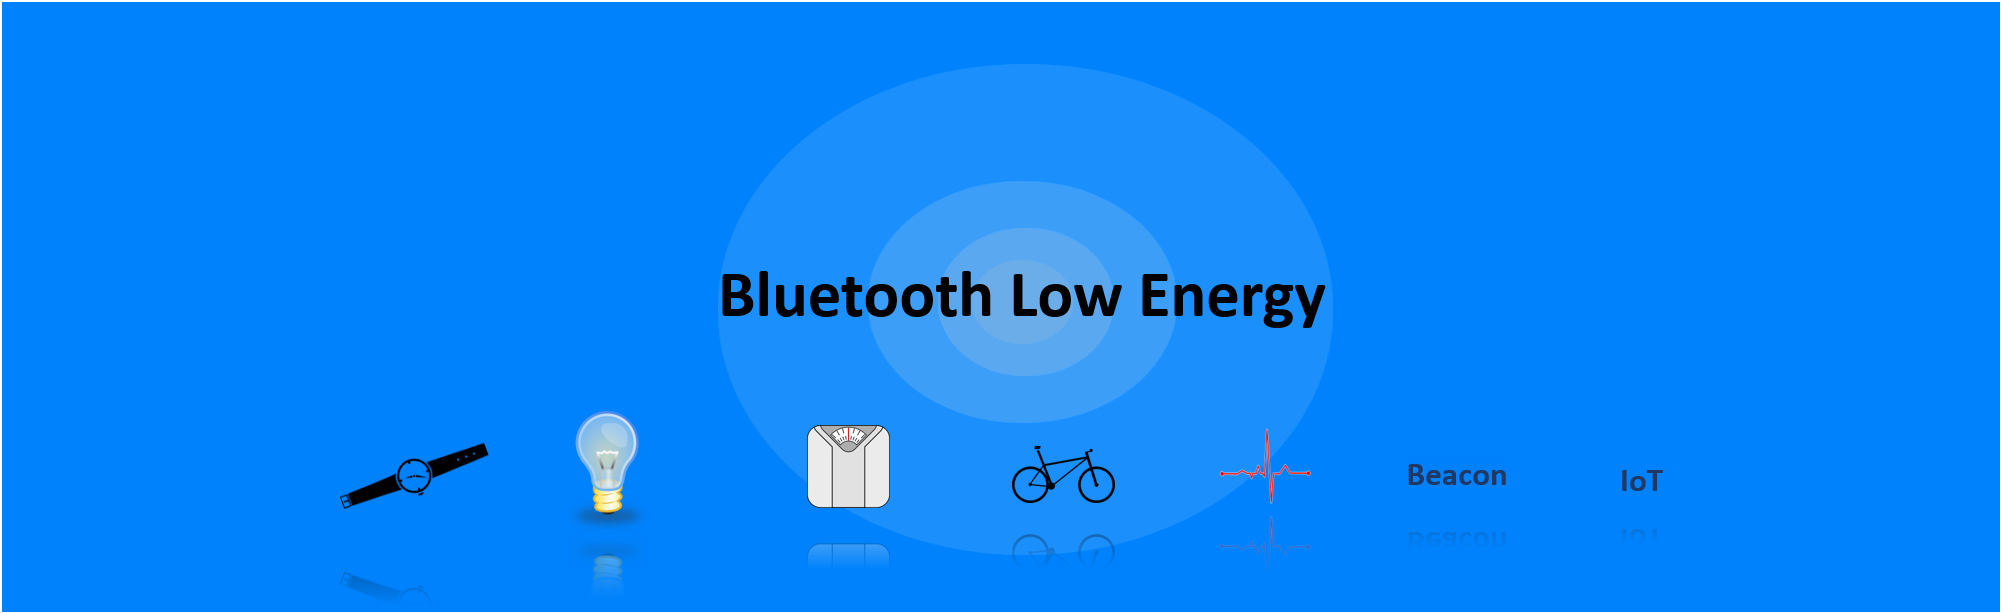 Bluetooth low energy. Bluetooth Low Energy технология. Ble (Bluetooth Low Energy) картинки. Bluetooth Low Energy 5..